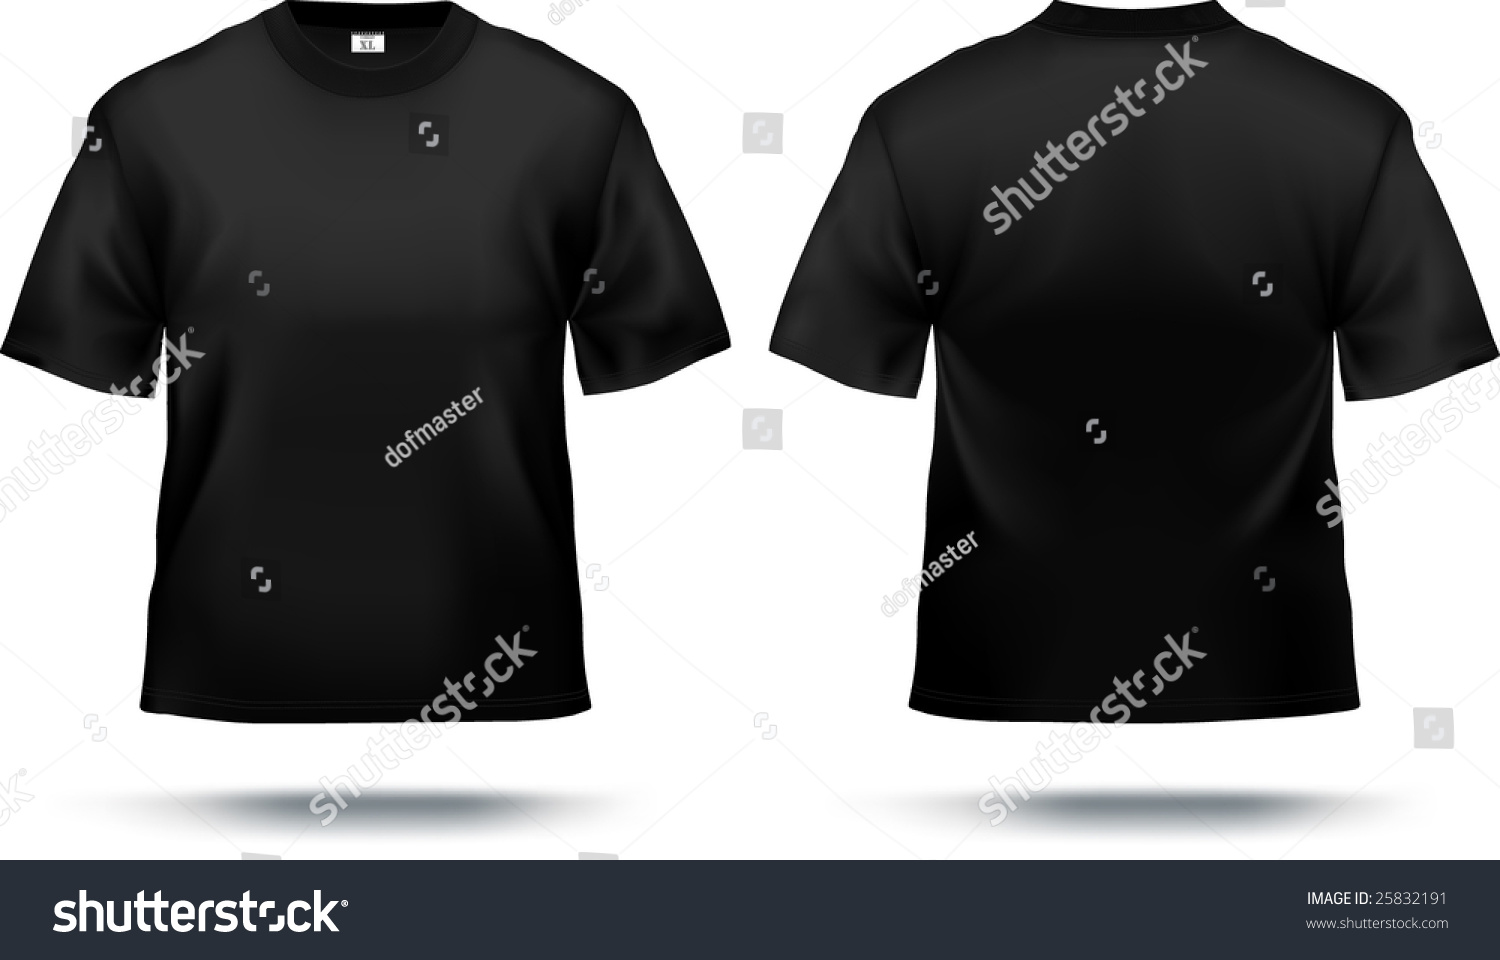 黑色t恤设计模板(正面和背面)。包含渐变网格元